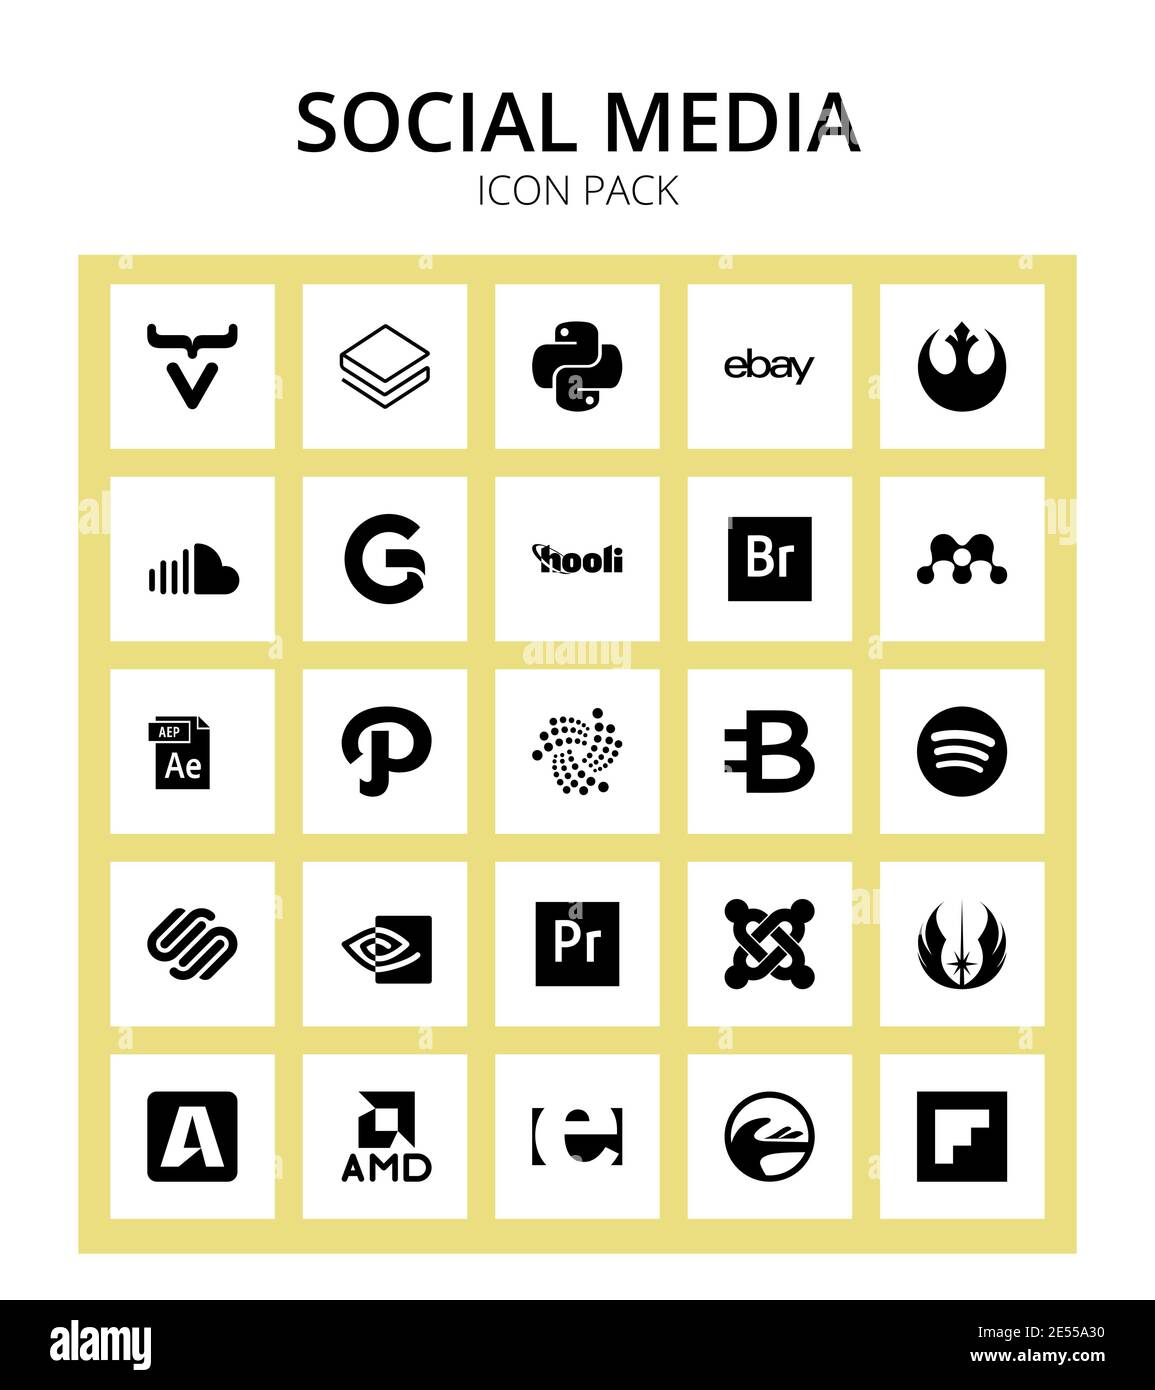 Pack de 25 social logo iota, After Effects, gofore, type de fichier, mendeley modifiable Vector Design Elements Illustration de Vecteur